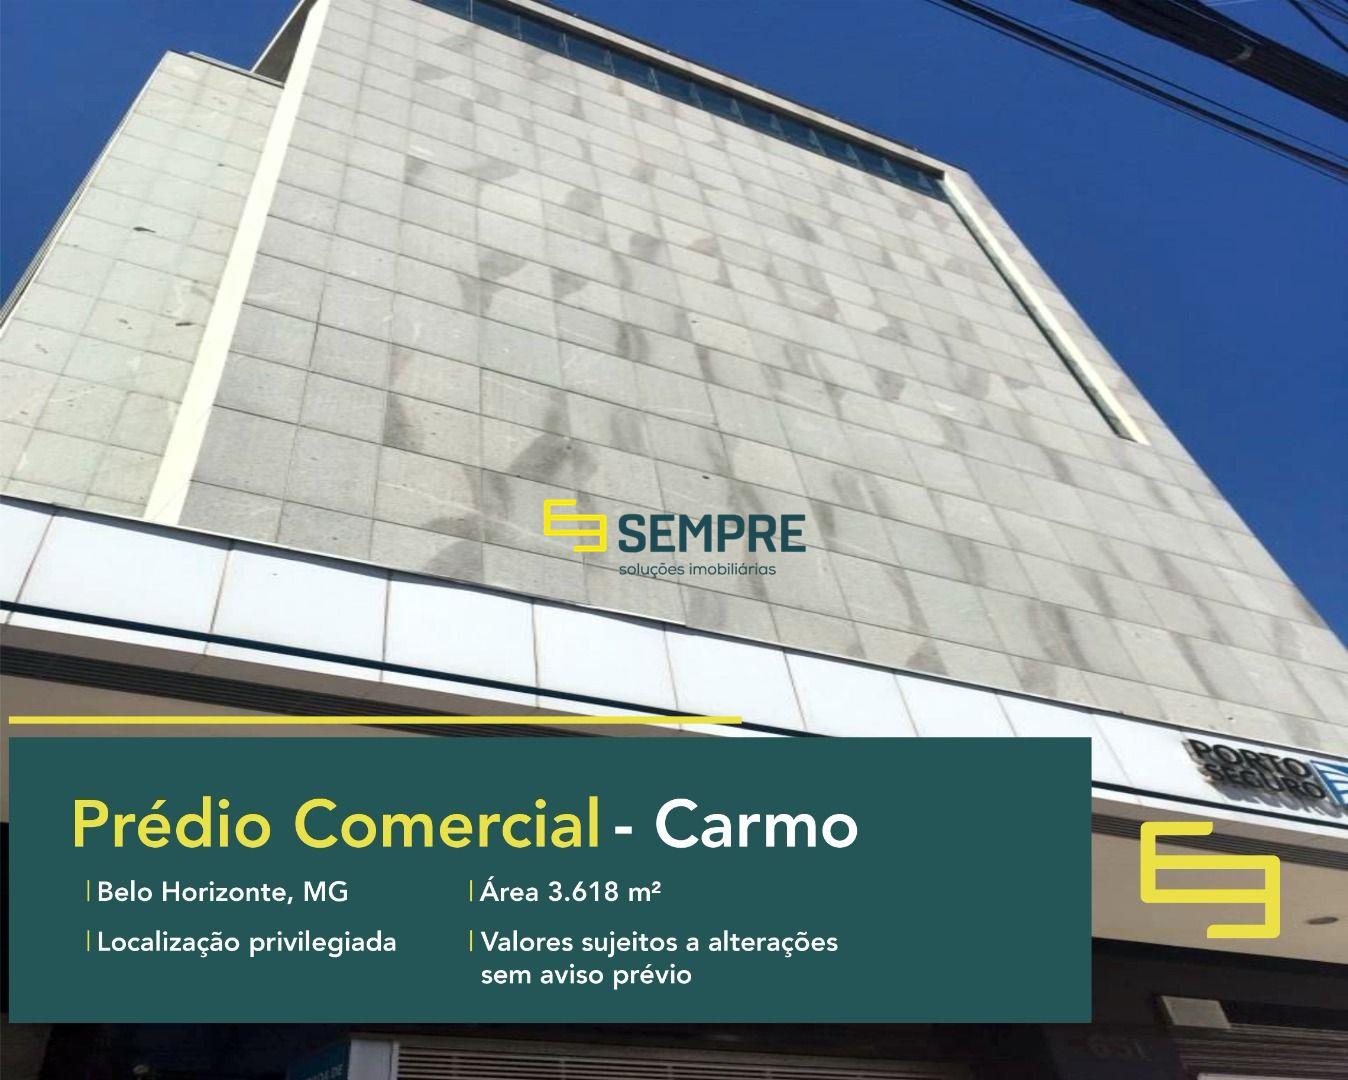 Prédio corporativo para locação com 11 vagas no Carmo em Belo Horizonte. Prédio comercial para locação de salas comerciais.